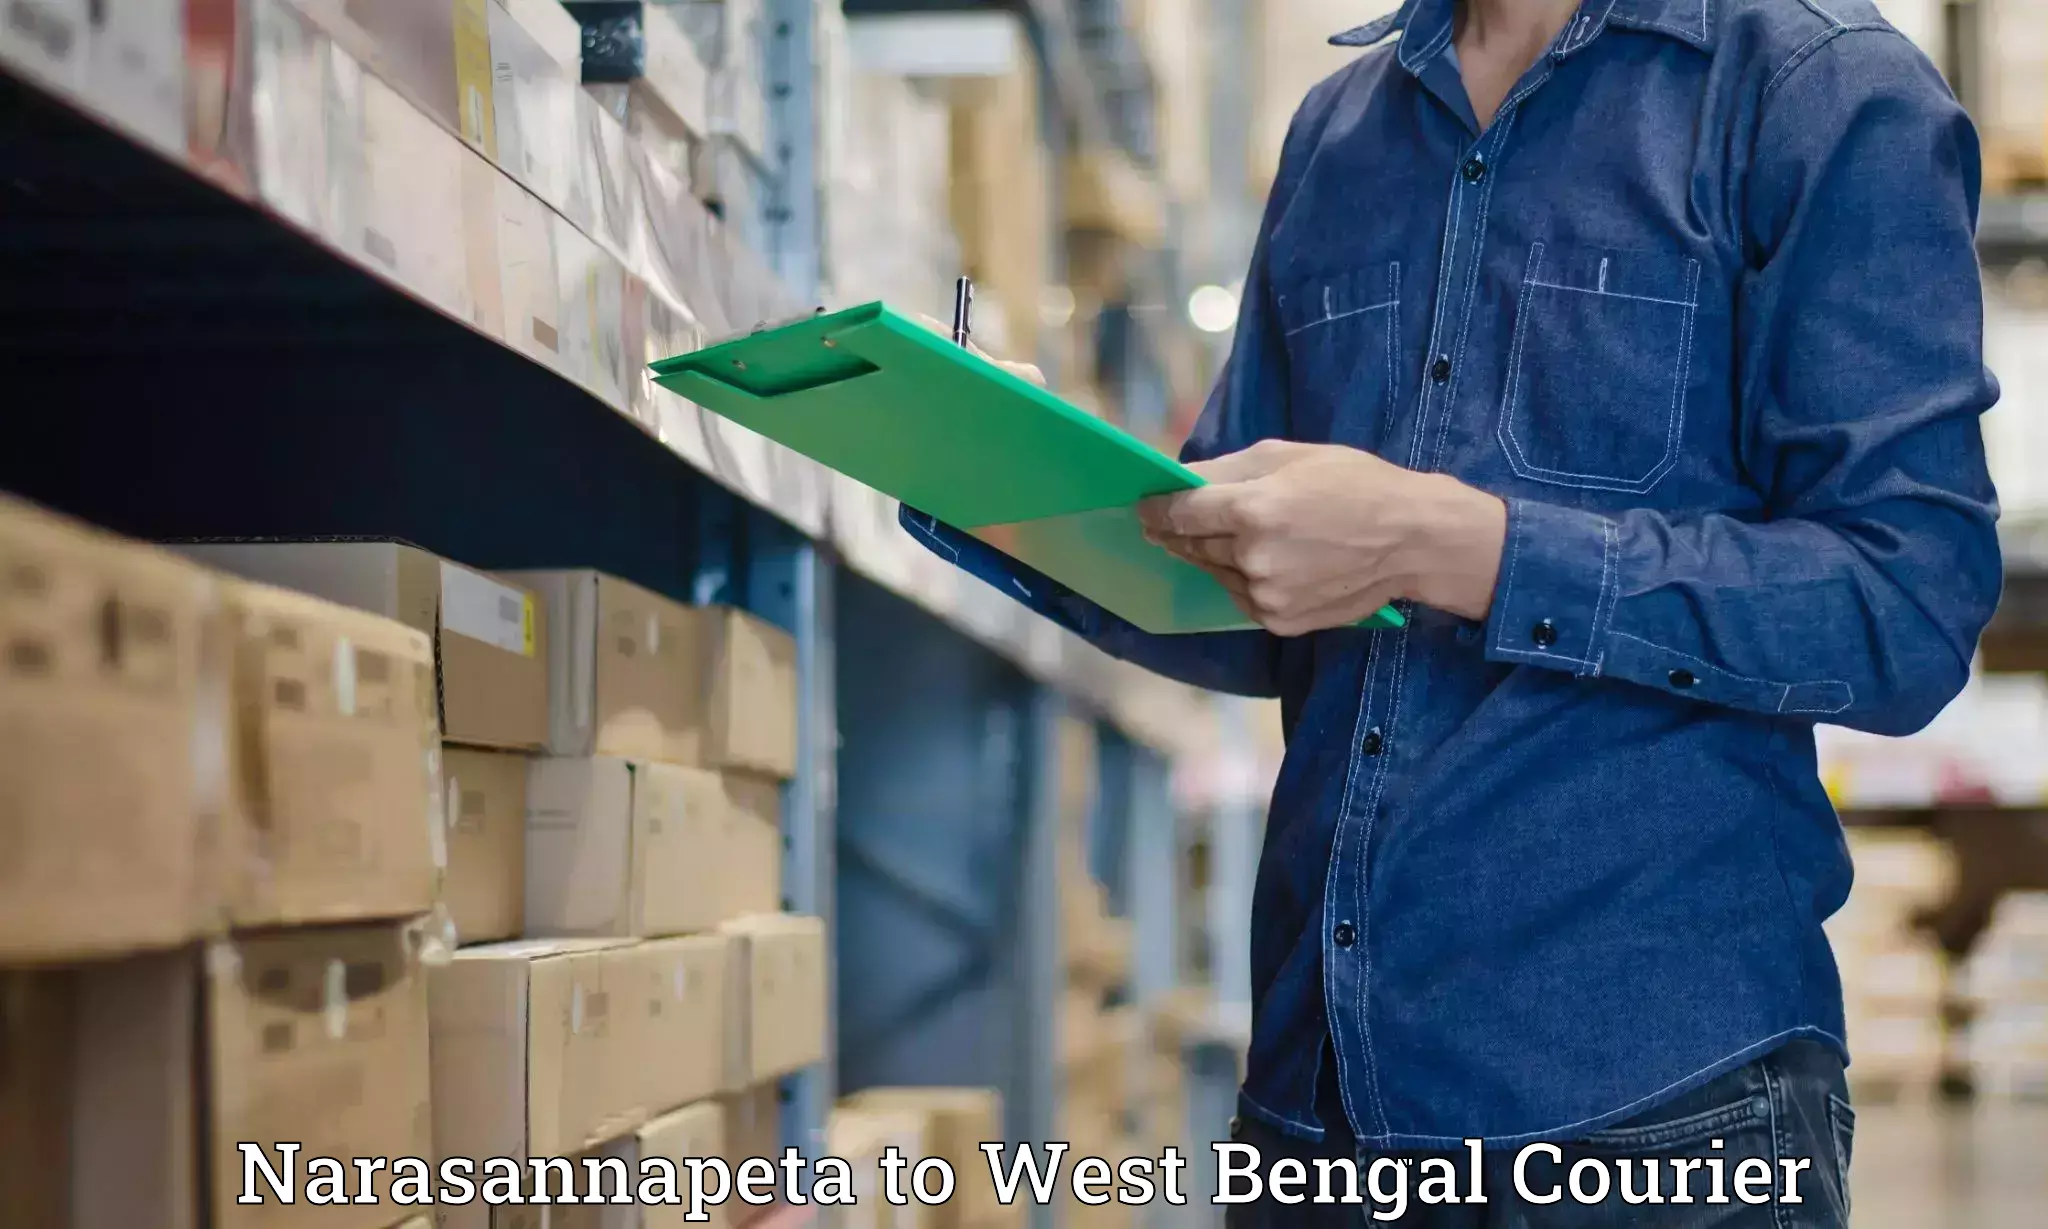 Customer-oriented courier services Narasannapeta to Bankura